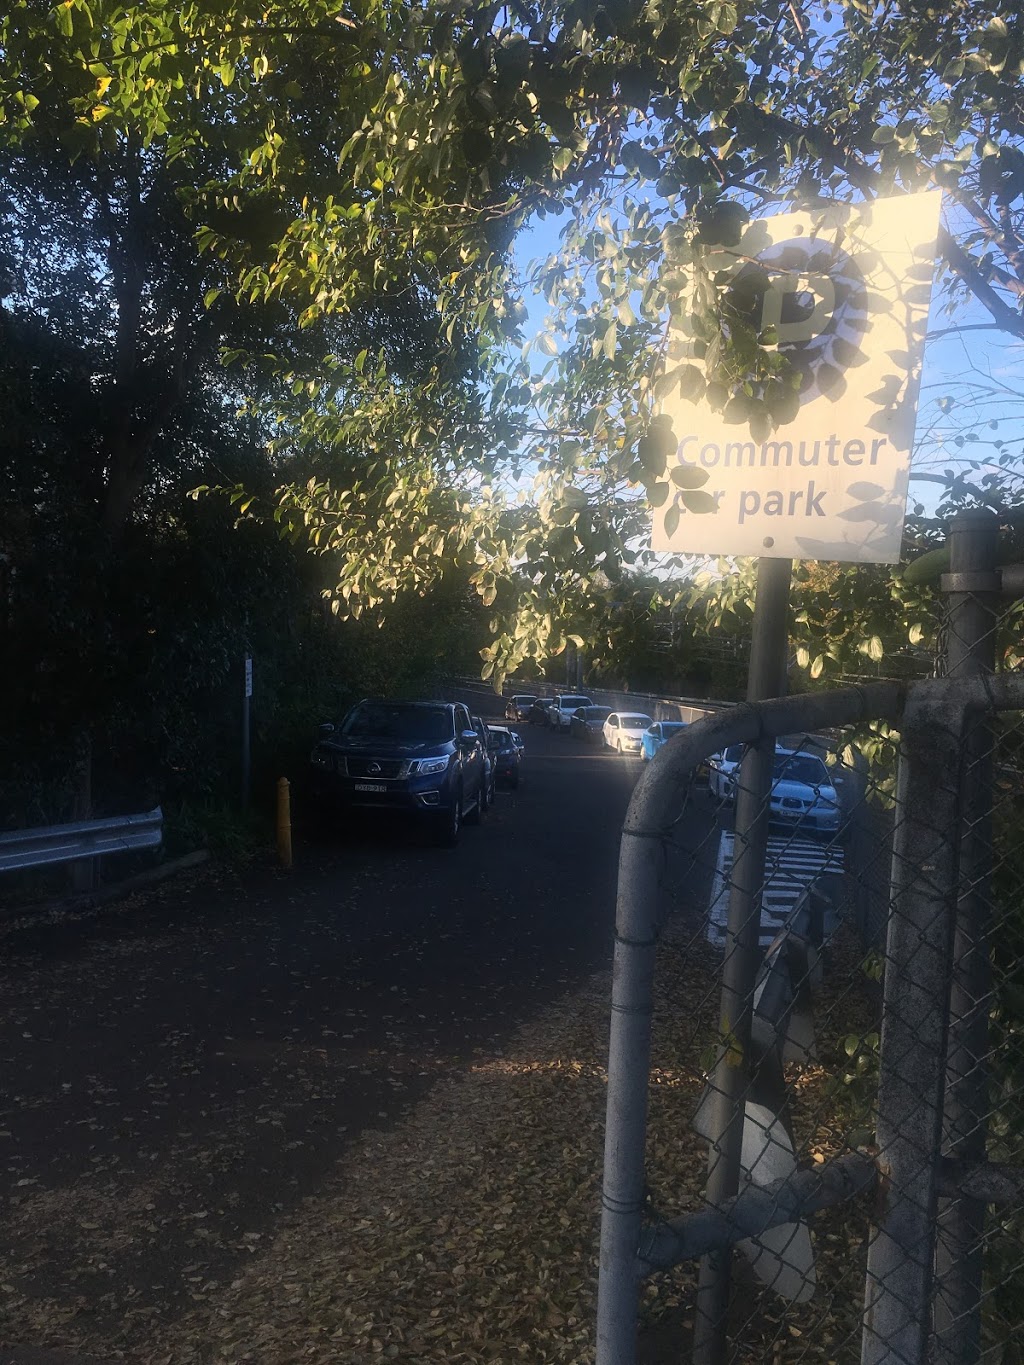 Commuter Car Park | parking | Wollstonecraft NSW 2065, Australia | 131500 OR +61 131500